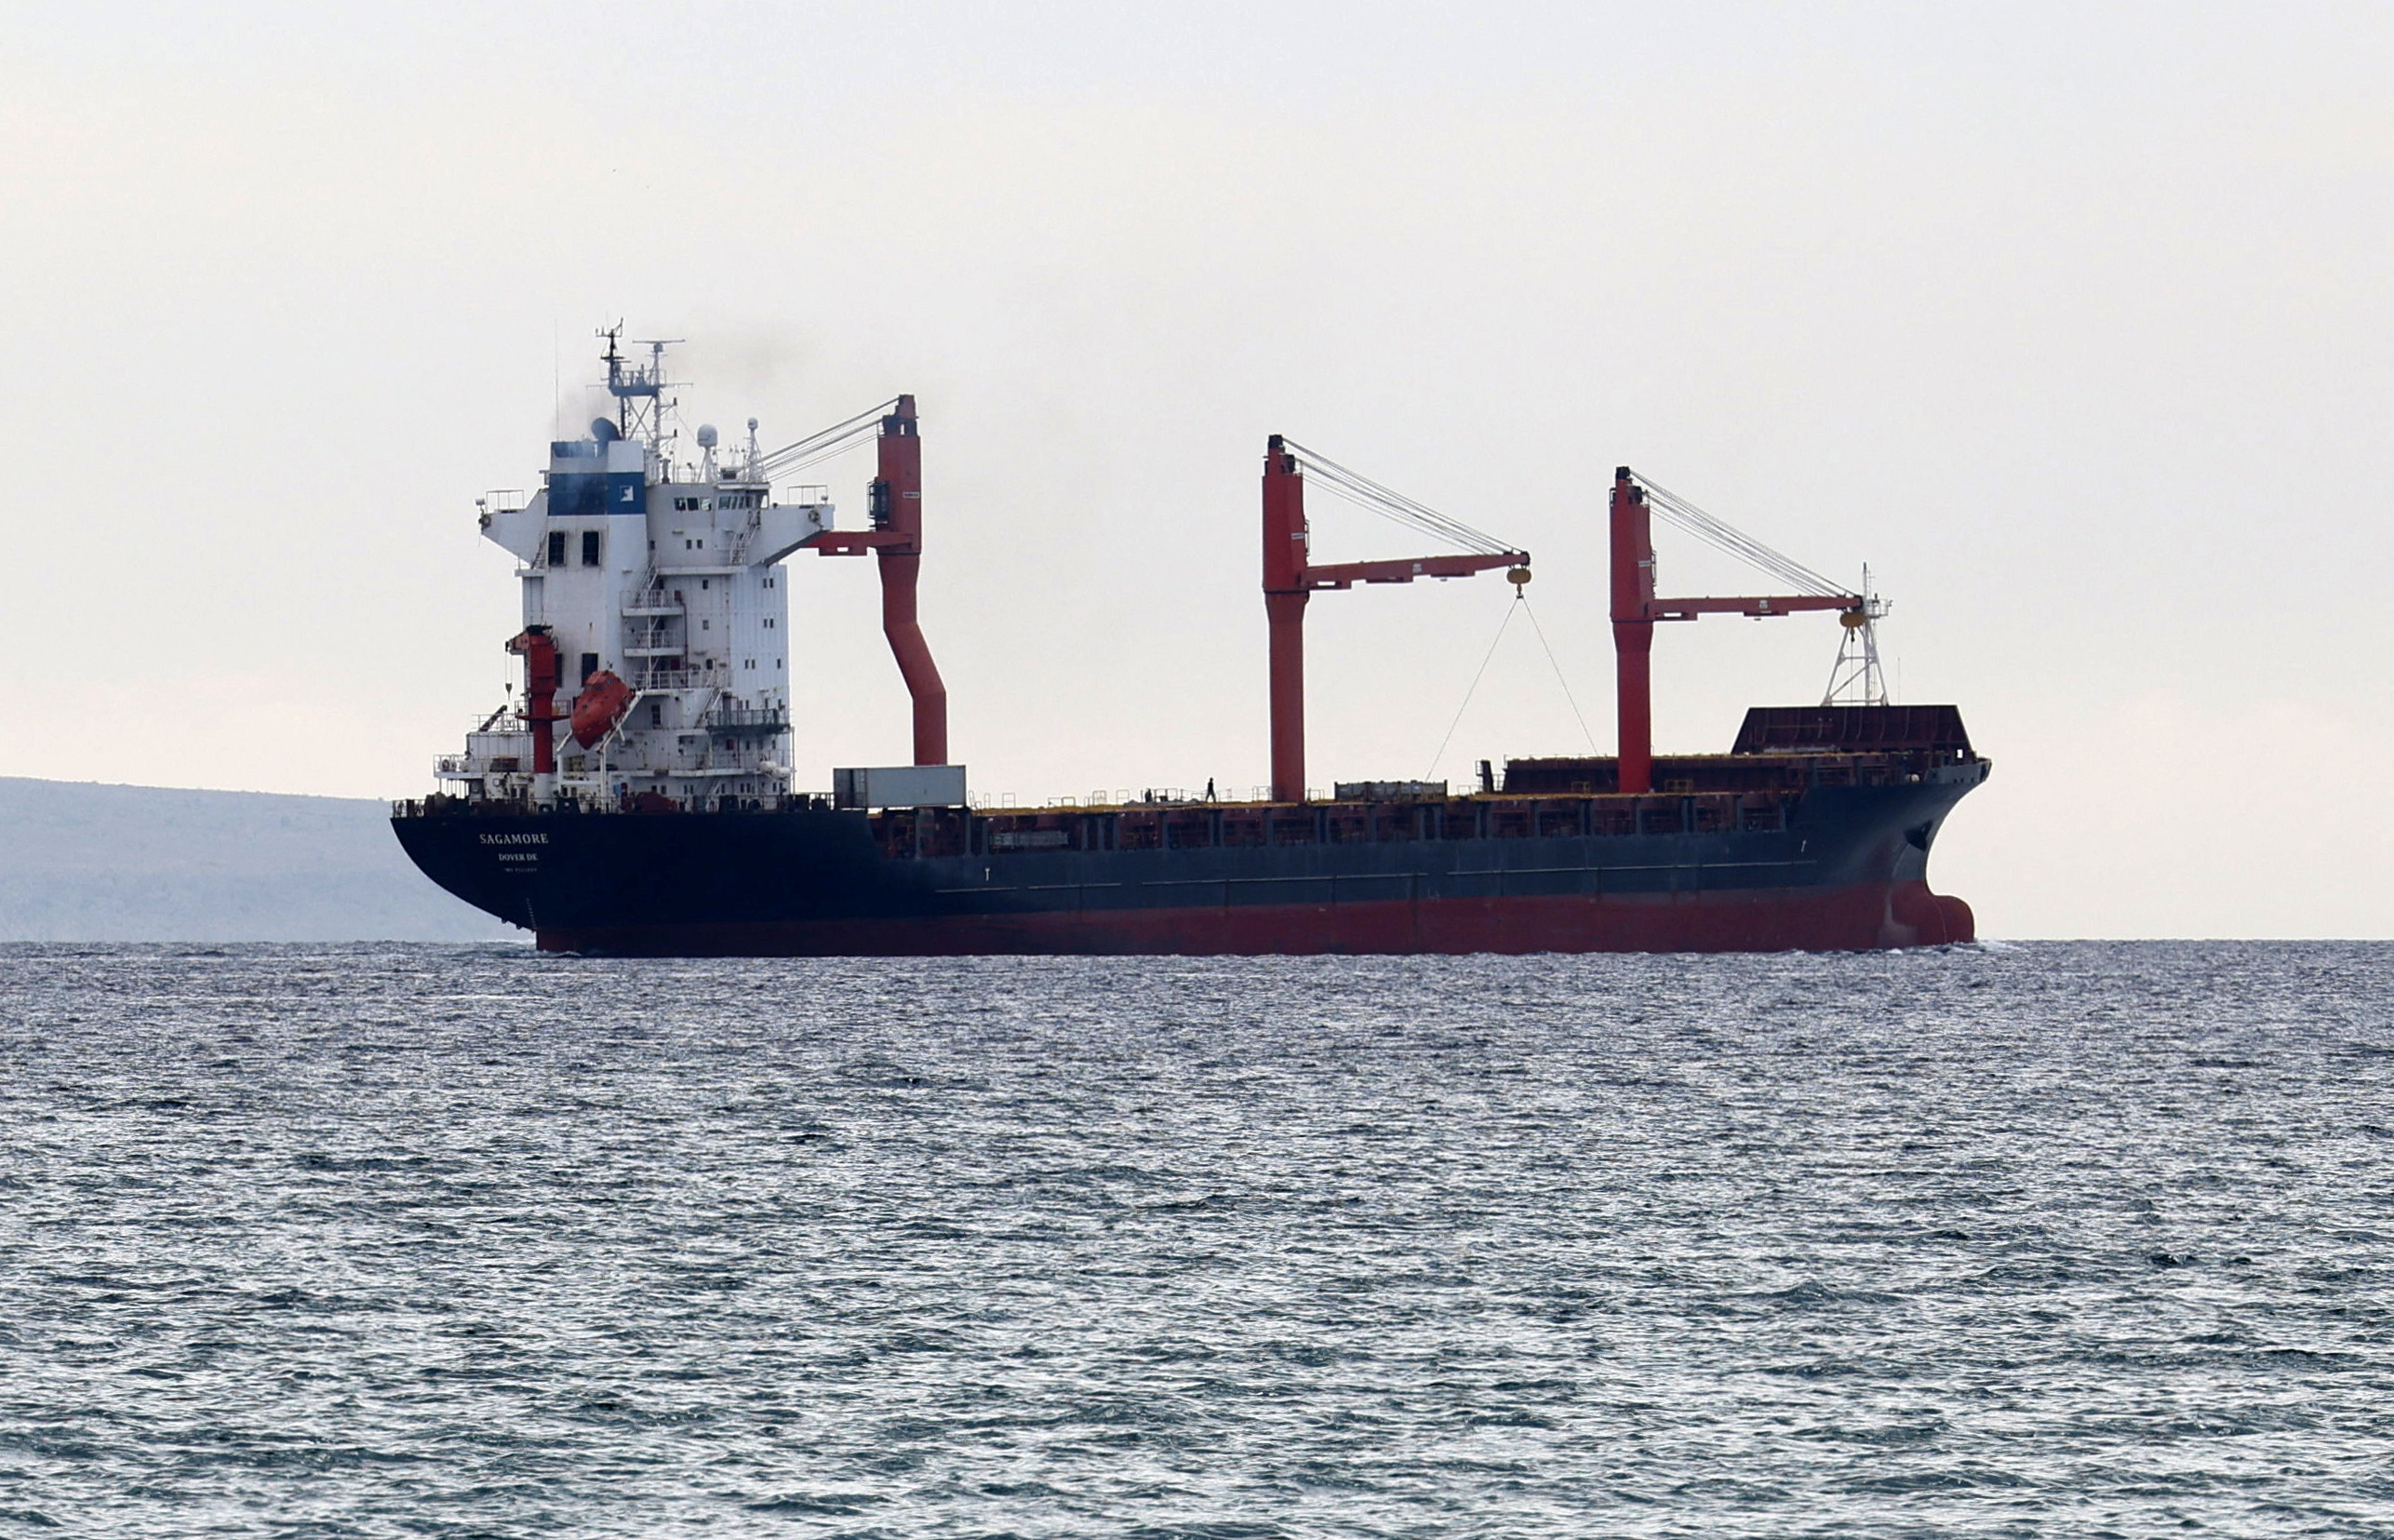 image Gaza aid ship waiting off Ashdod coast